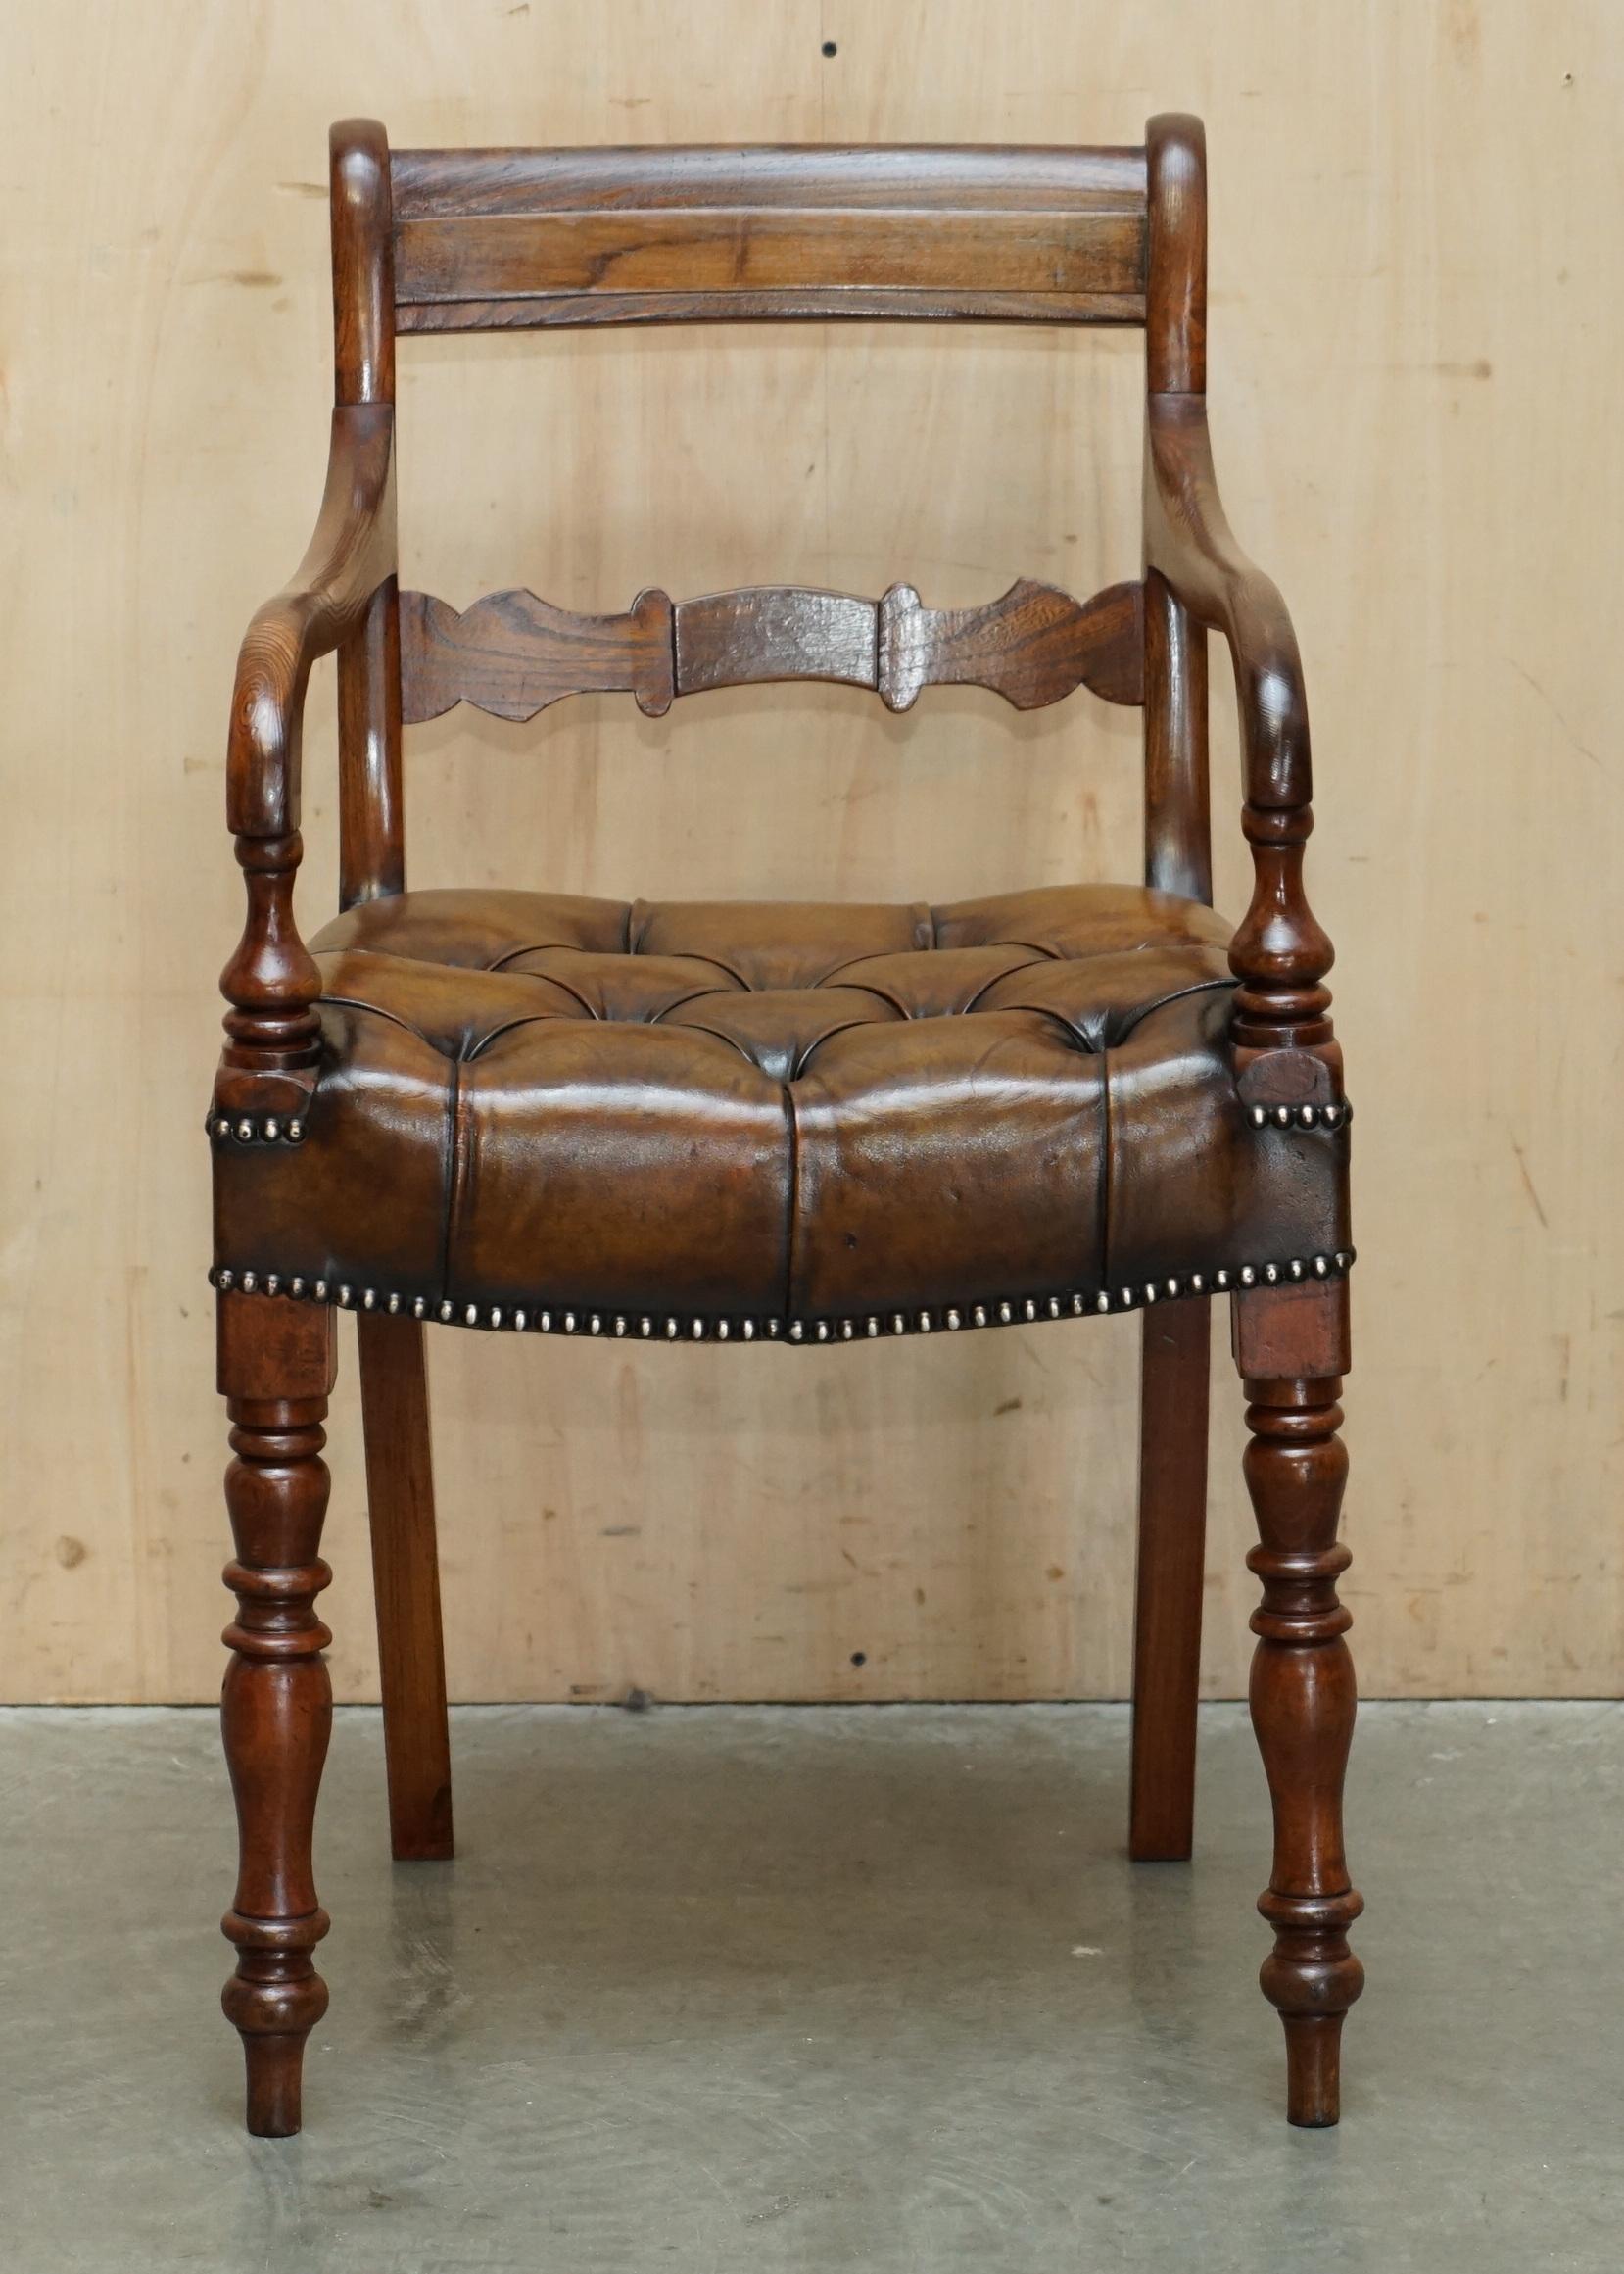 Royal House Antiques

Royal House Antiques freut sich, diesen schönen, antiken, vollständig restaurierten originalen Regency-Stuhl mit Ulmenrahmen (ca. 1810-1820) aus braunem, handgefärbtem Chesterfield-Leder zum Verkauf anzubieten.

Bitte beachten